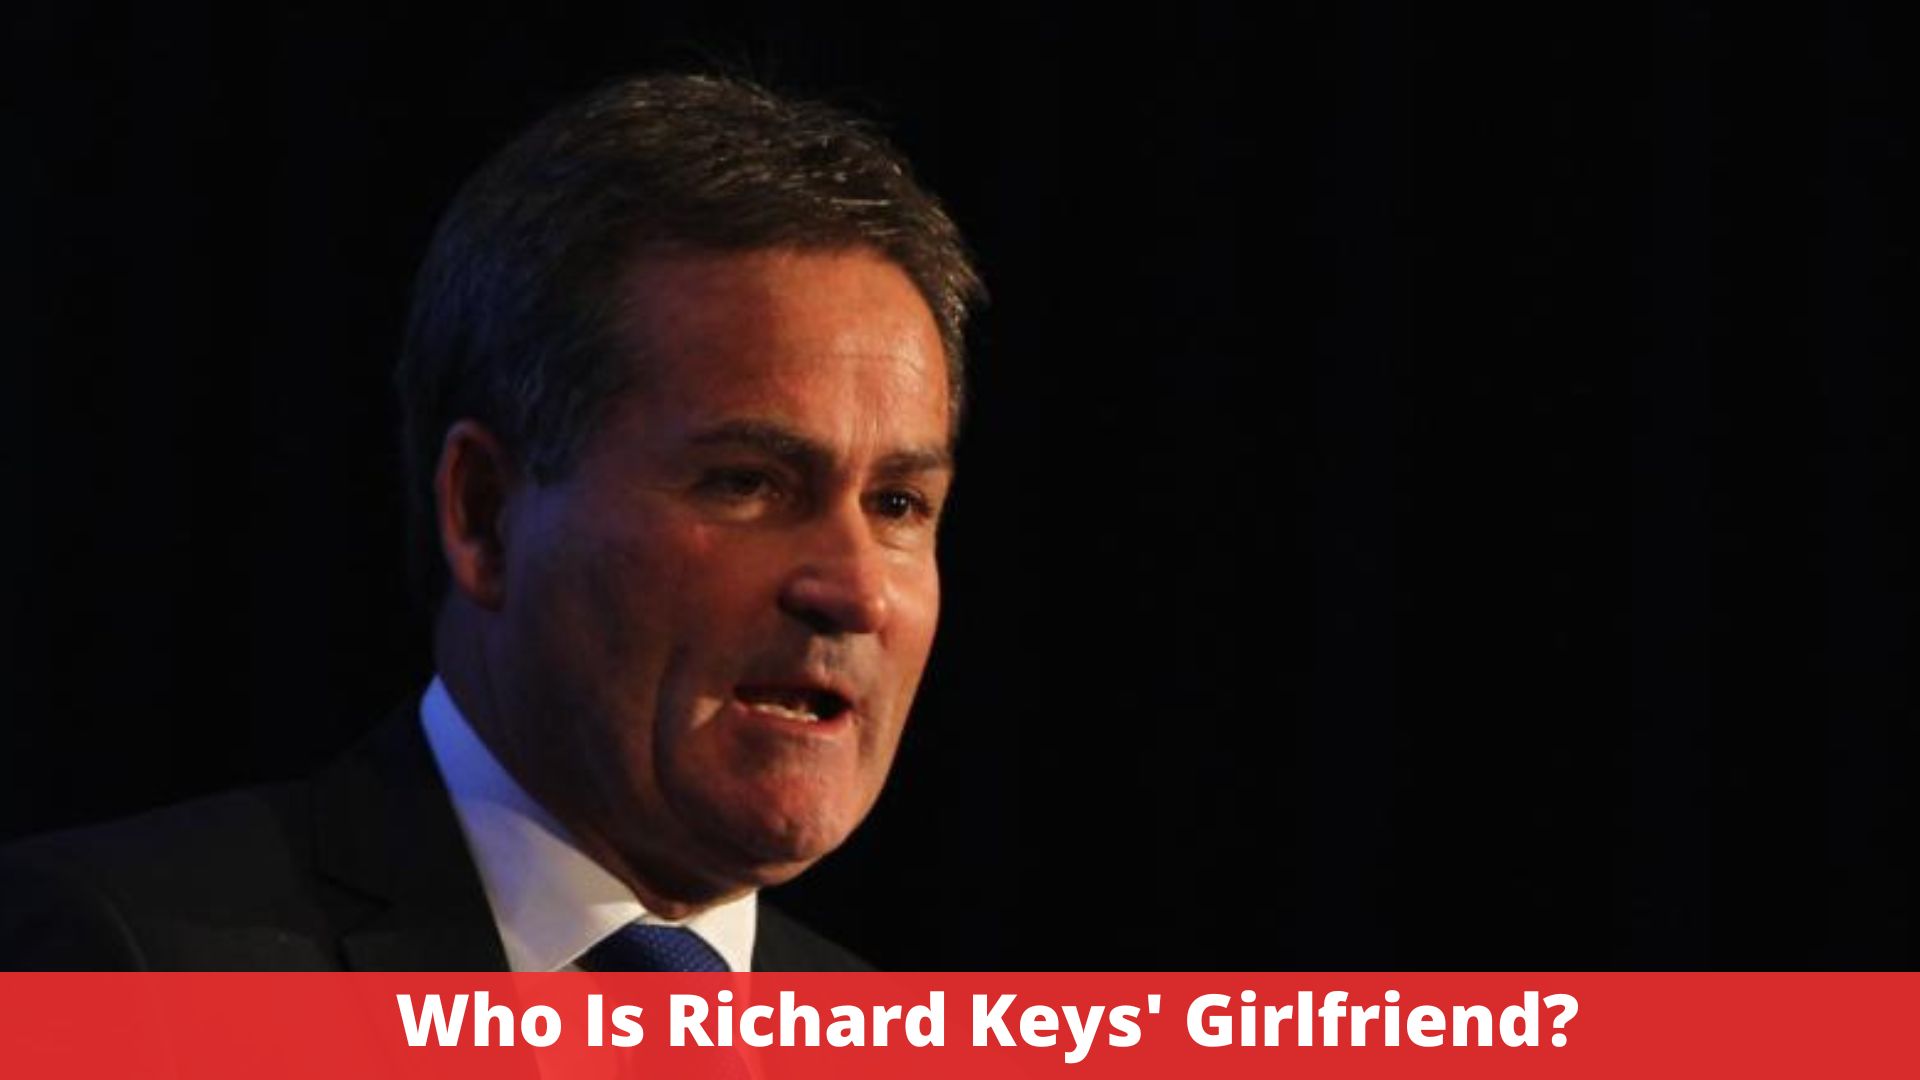 Who Is Richard keys' Girlfriend?